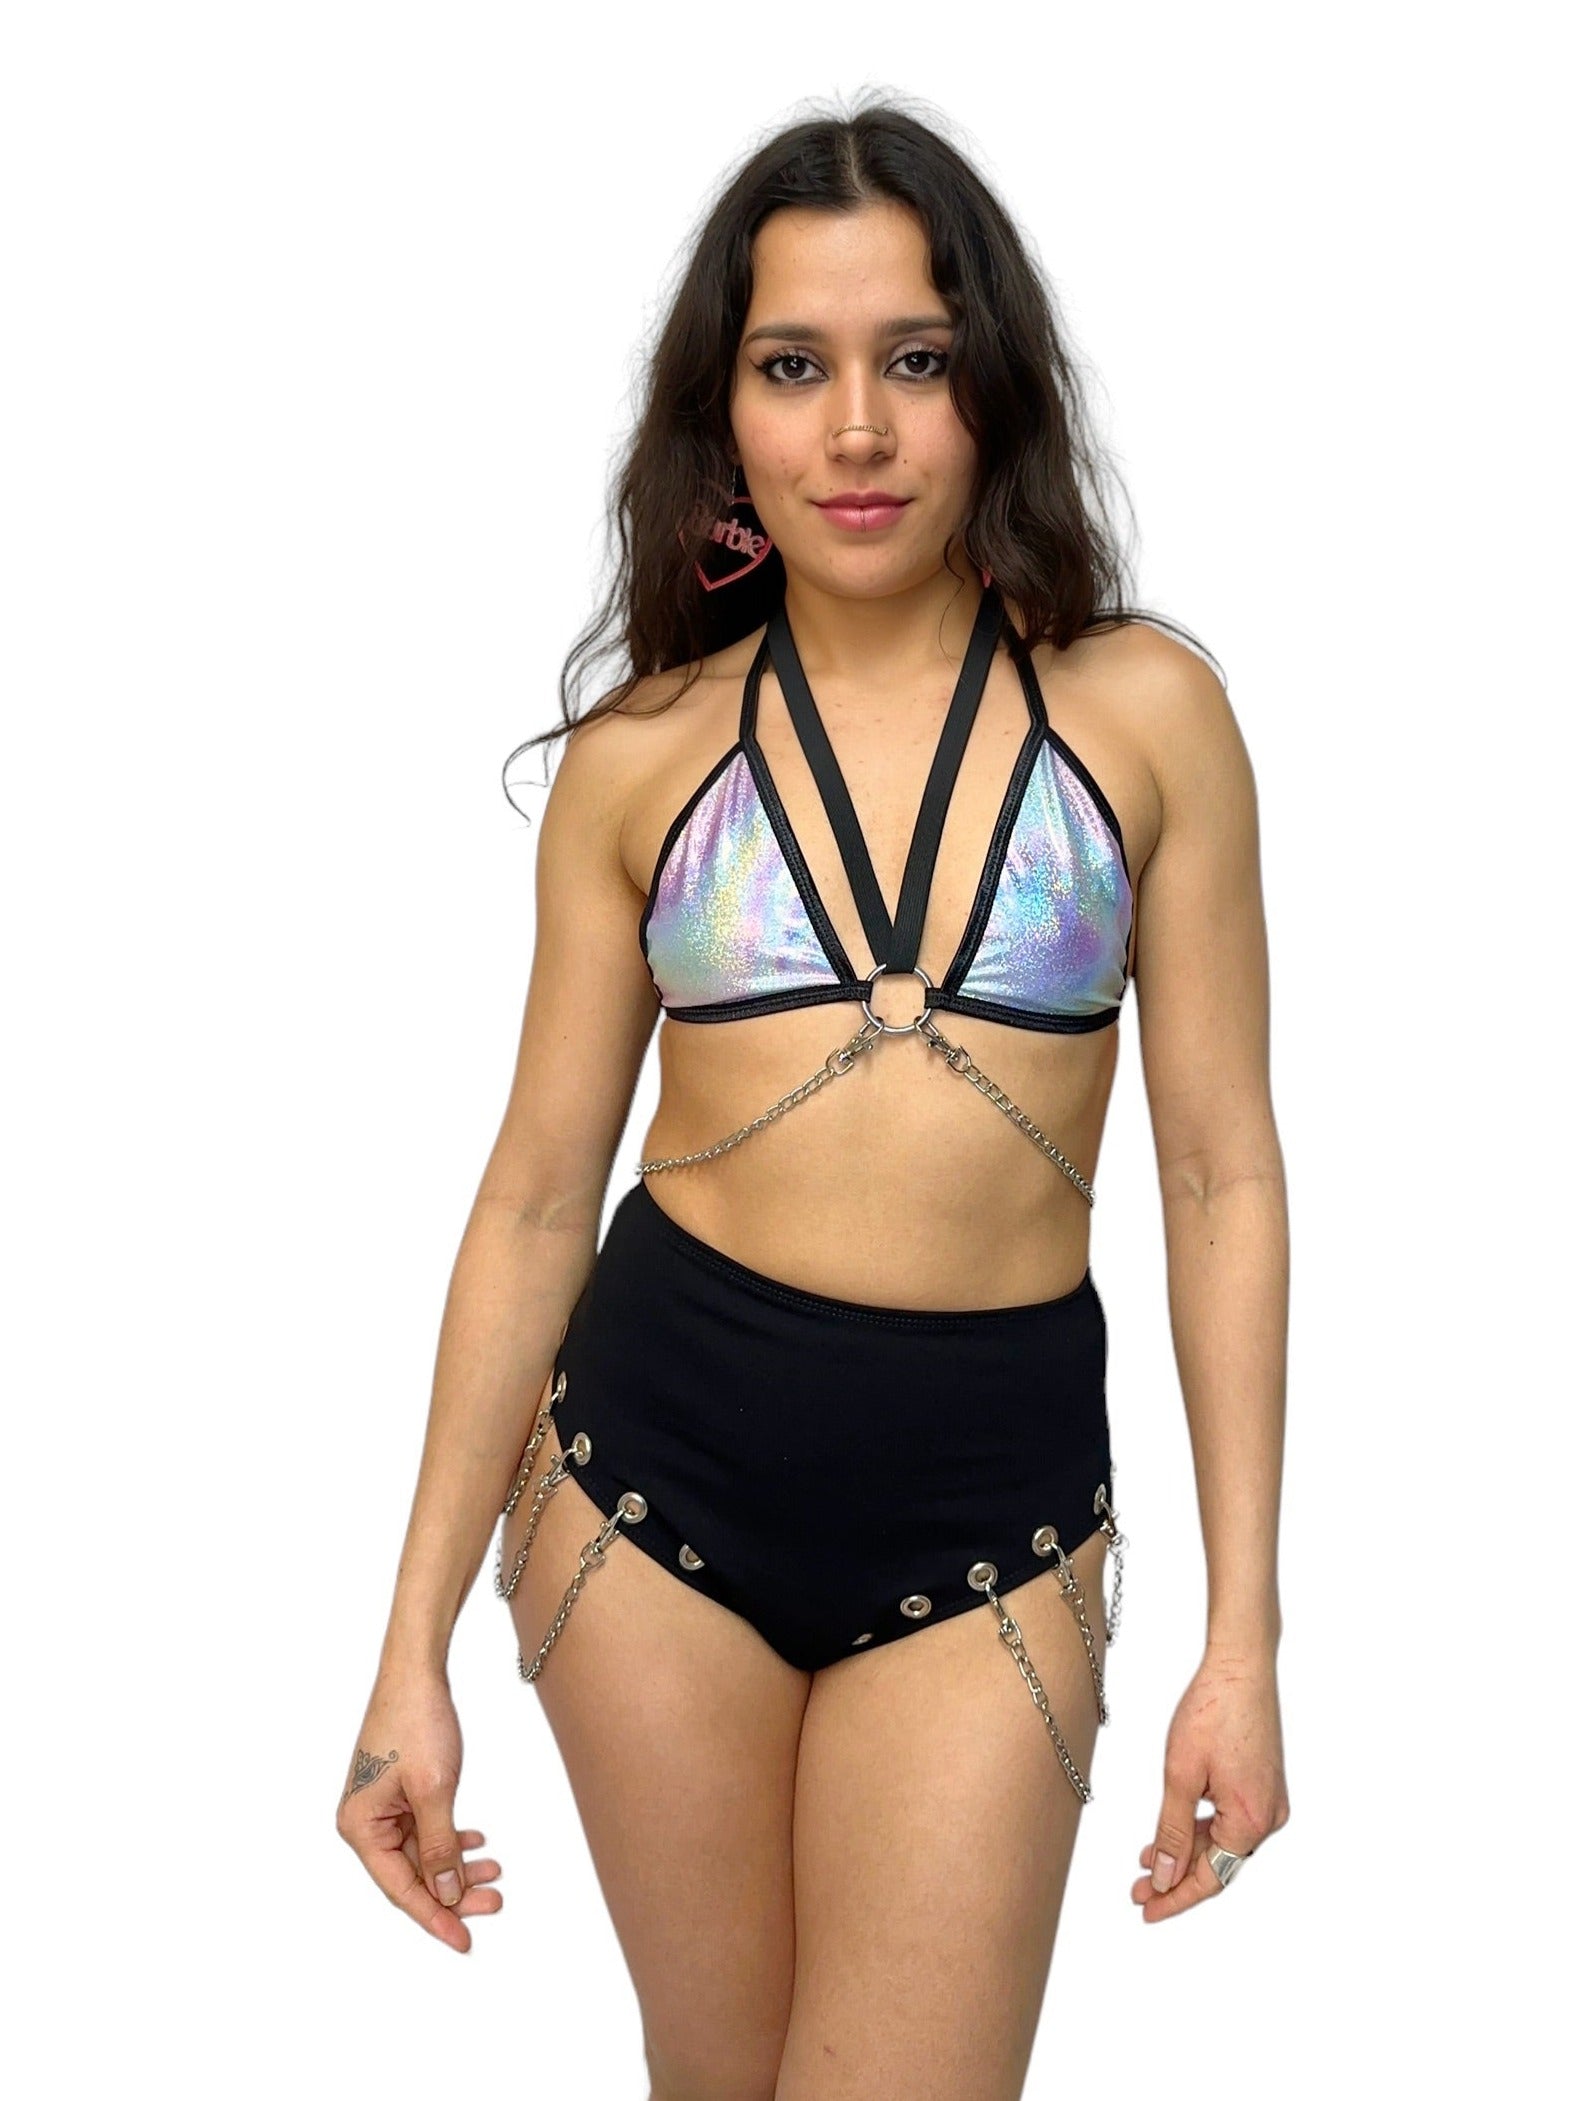 Meisje met holografische bikini top met kettingen, techno outfit